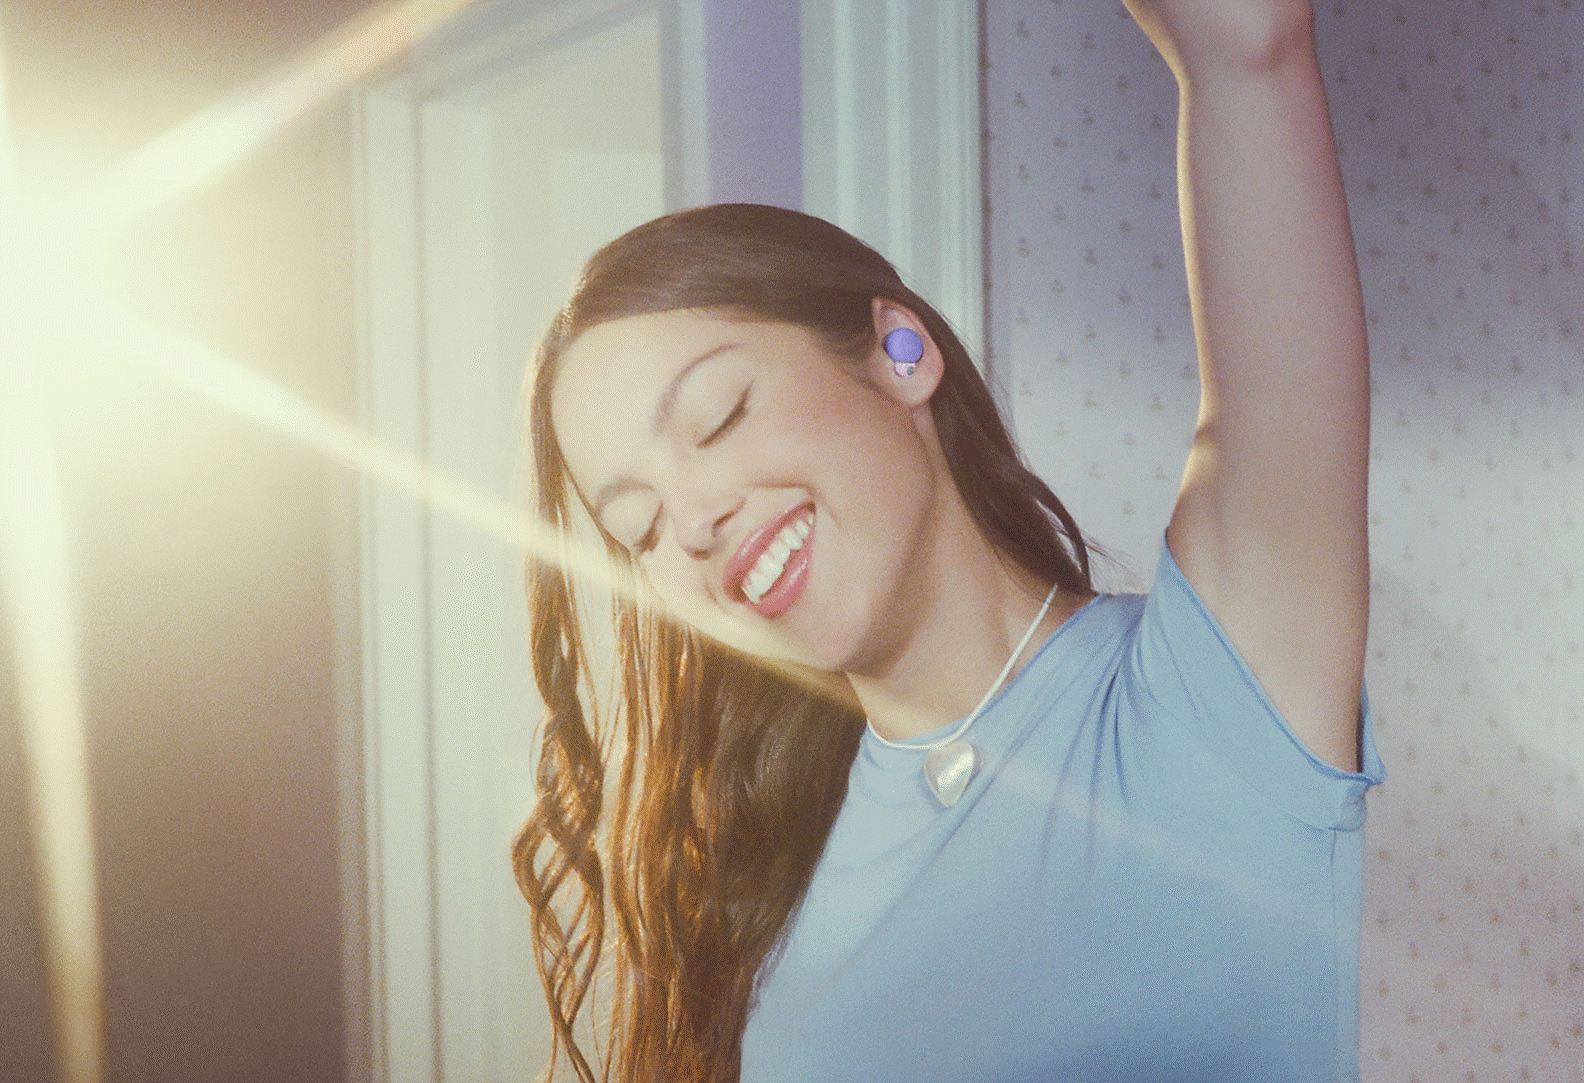 ภาพ Olivia กำลังสวมหูฟัง LinkBuds S สีม่วงและยกแขนข้างหนึ่งเหนือศีรษะพร้อมด้วยแสงสว่างที่ฉากหลัง